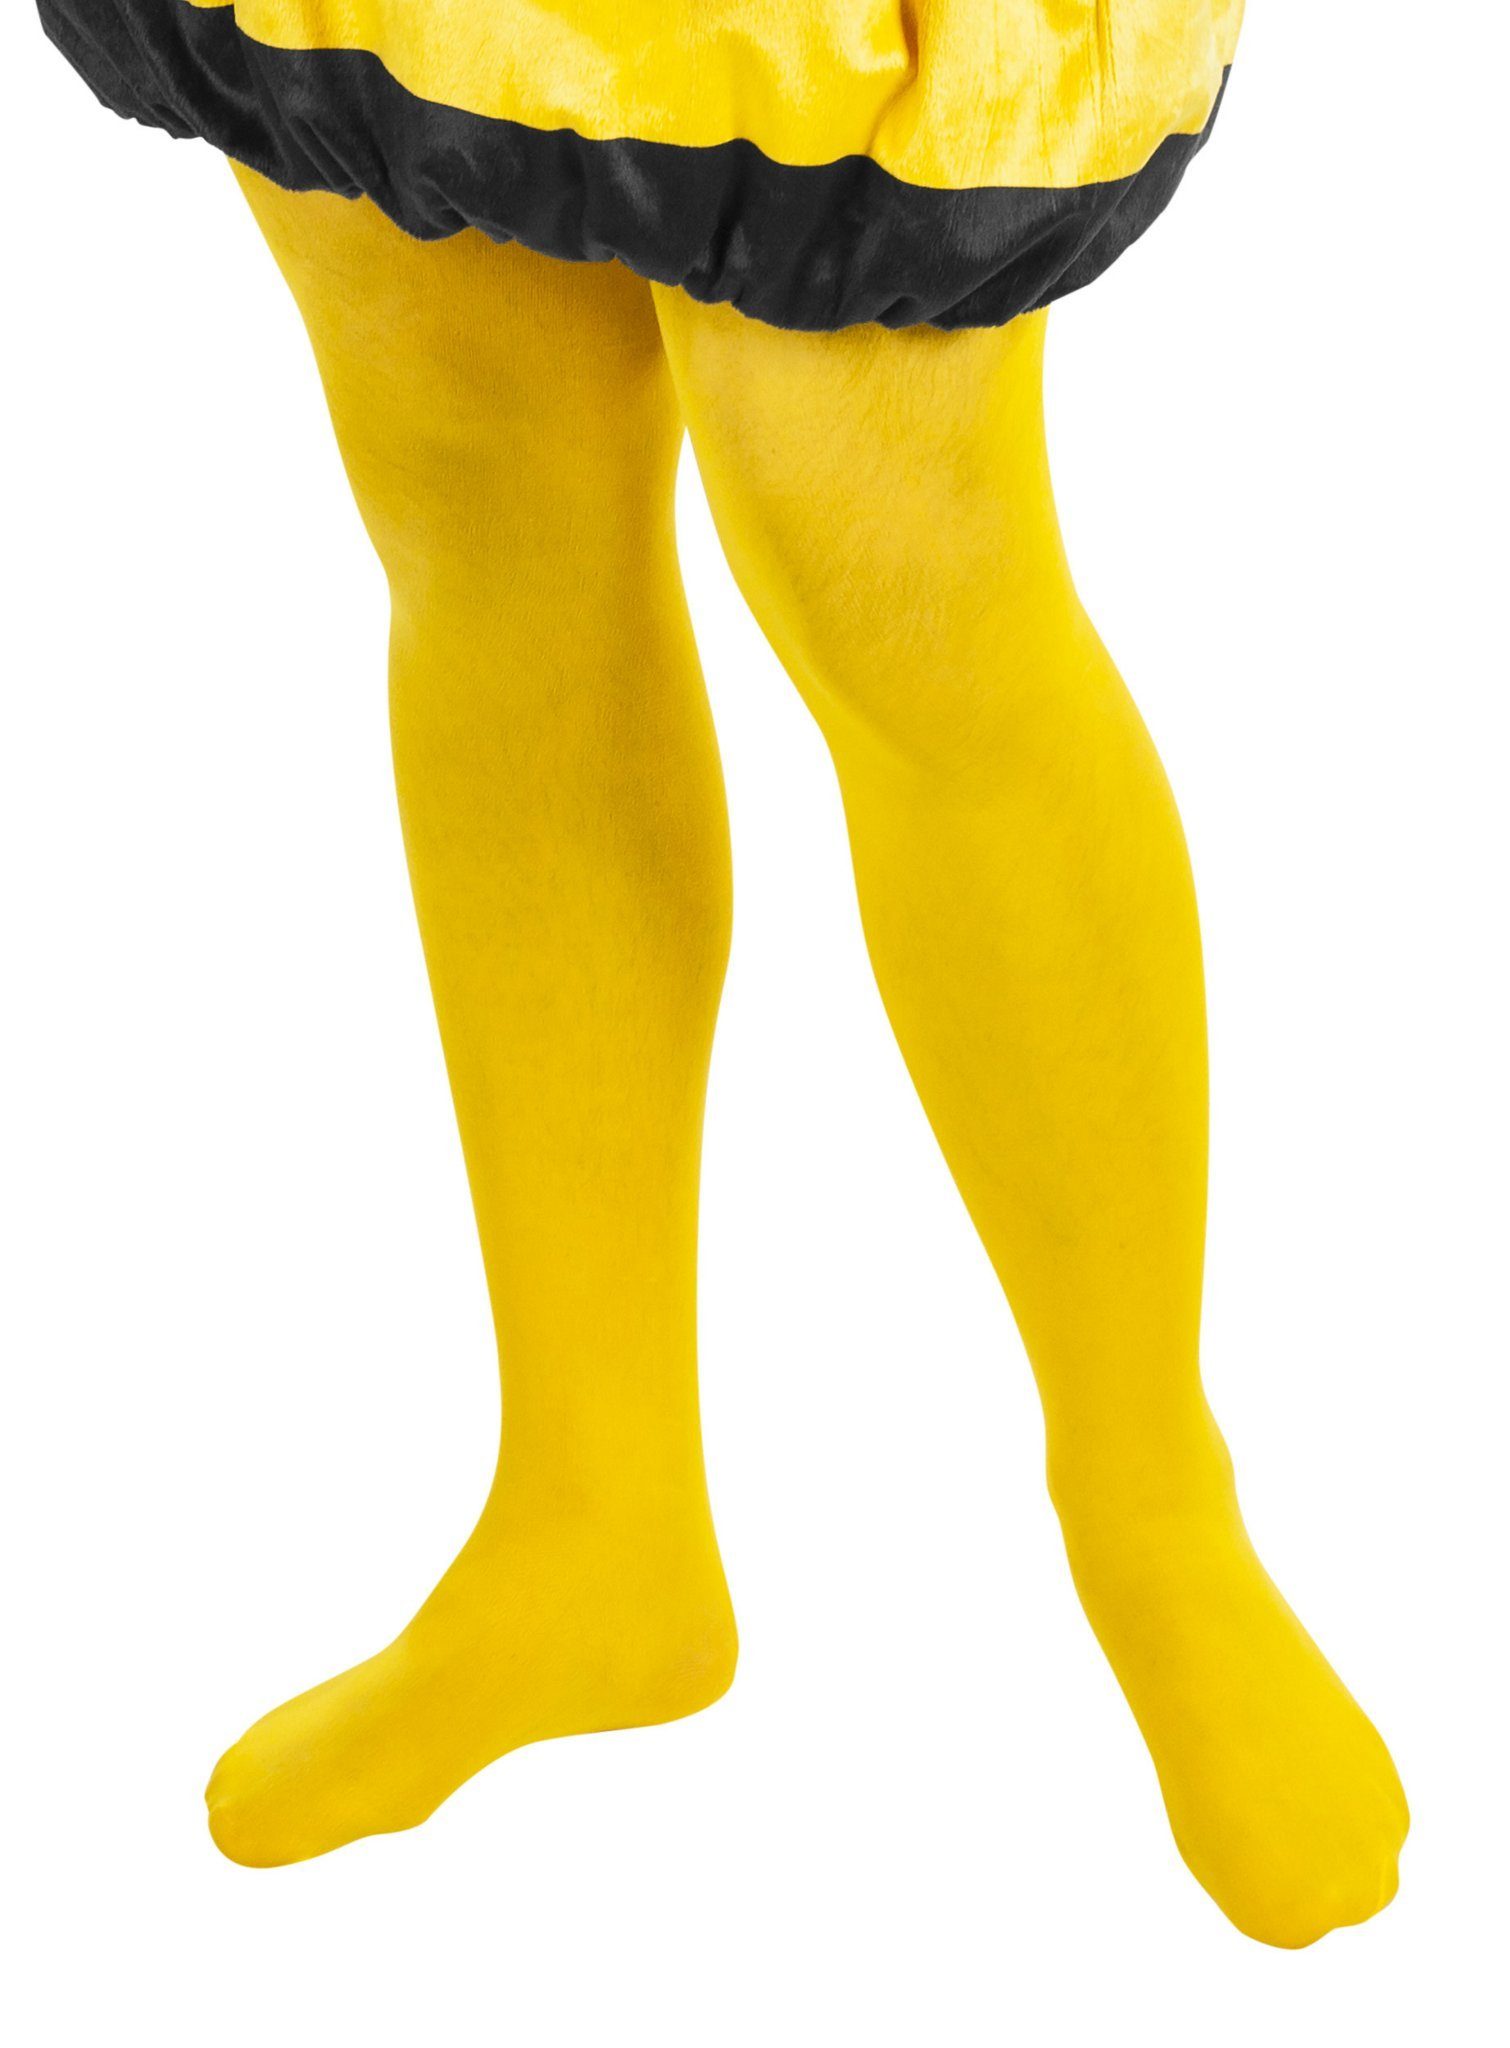 Maskworld Kostüm Biene Maja Strumpfhose, Gelbe Strumpfhose für Bienenbeine  - passt Maja und Willi gleichermaßen